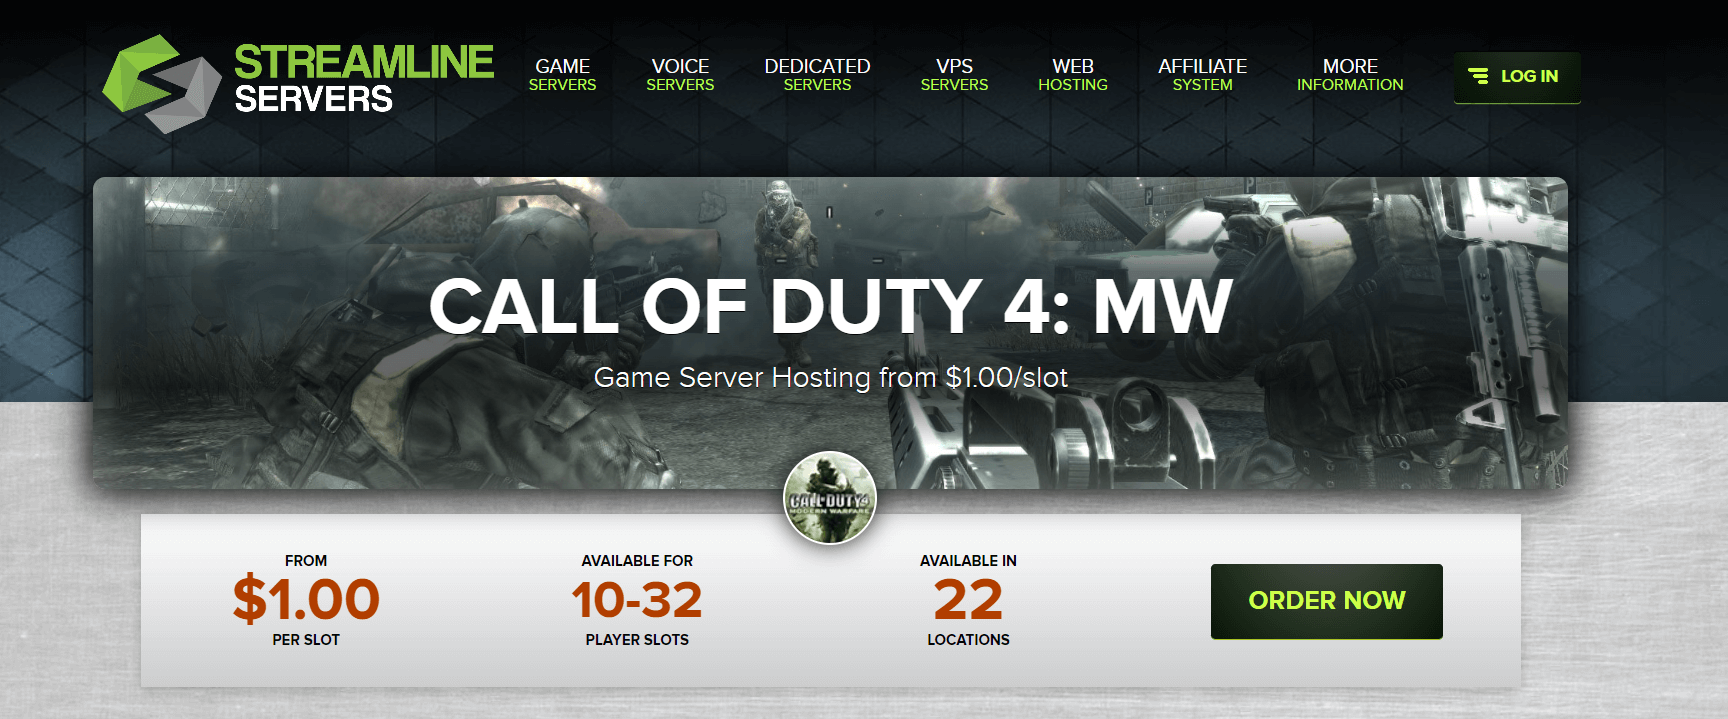 Call of Duty 4: MW Streamline Servers